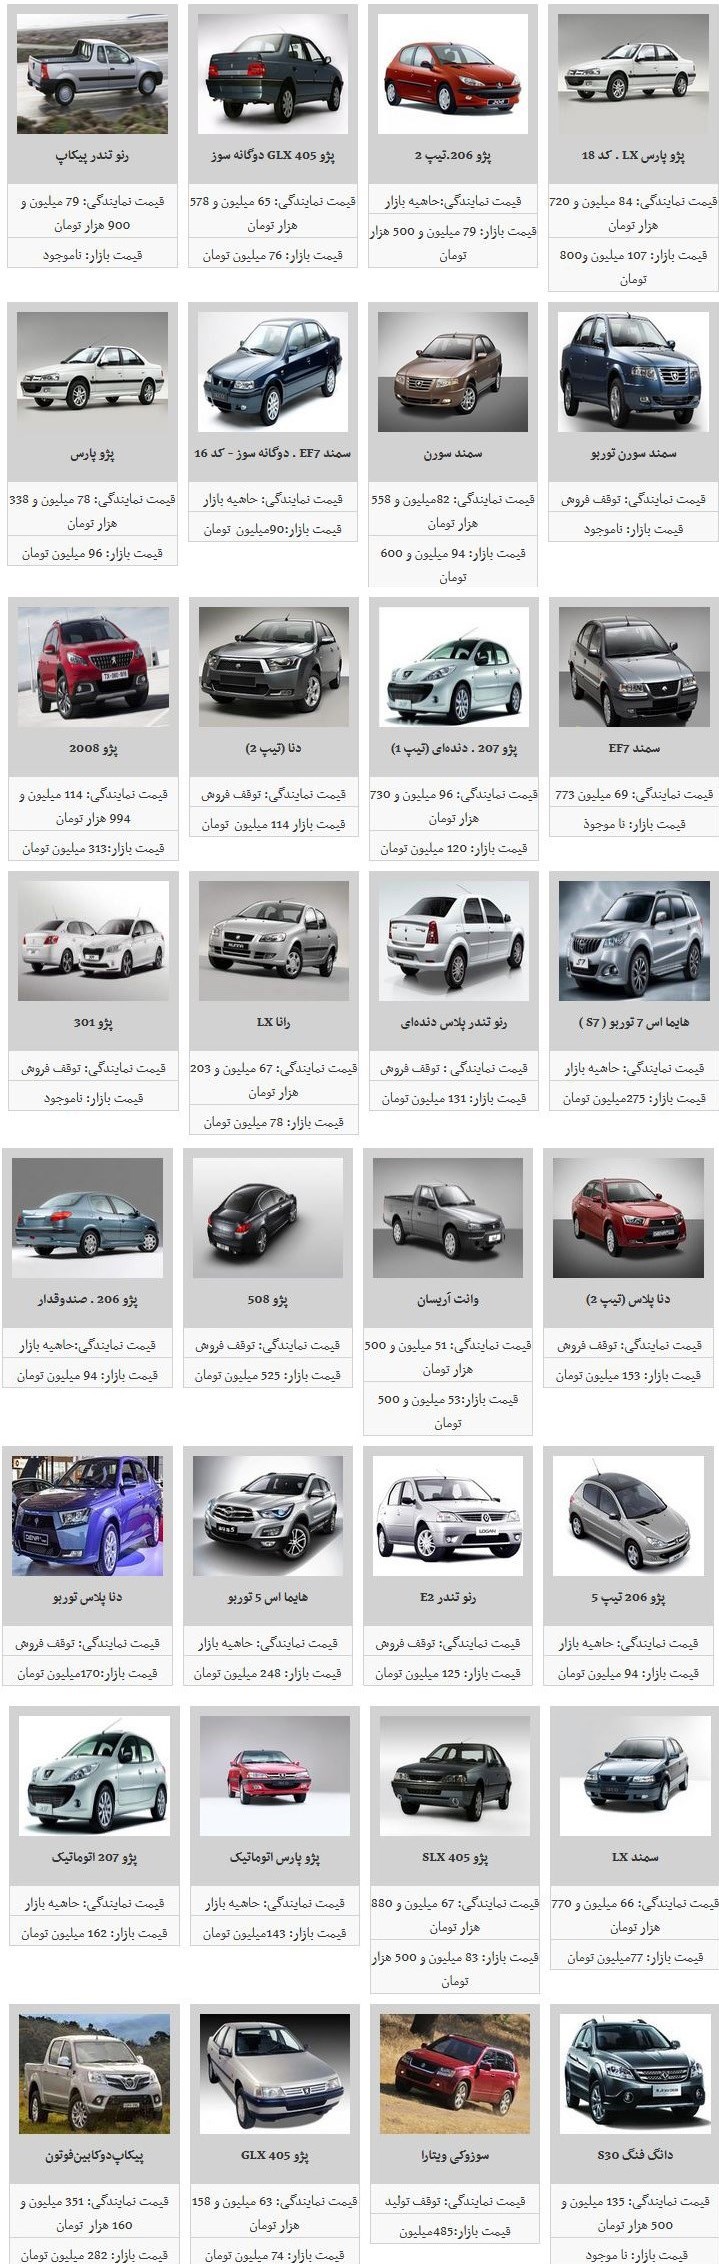 قیمت محصولات ایران خودرو همچنان نزولی